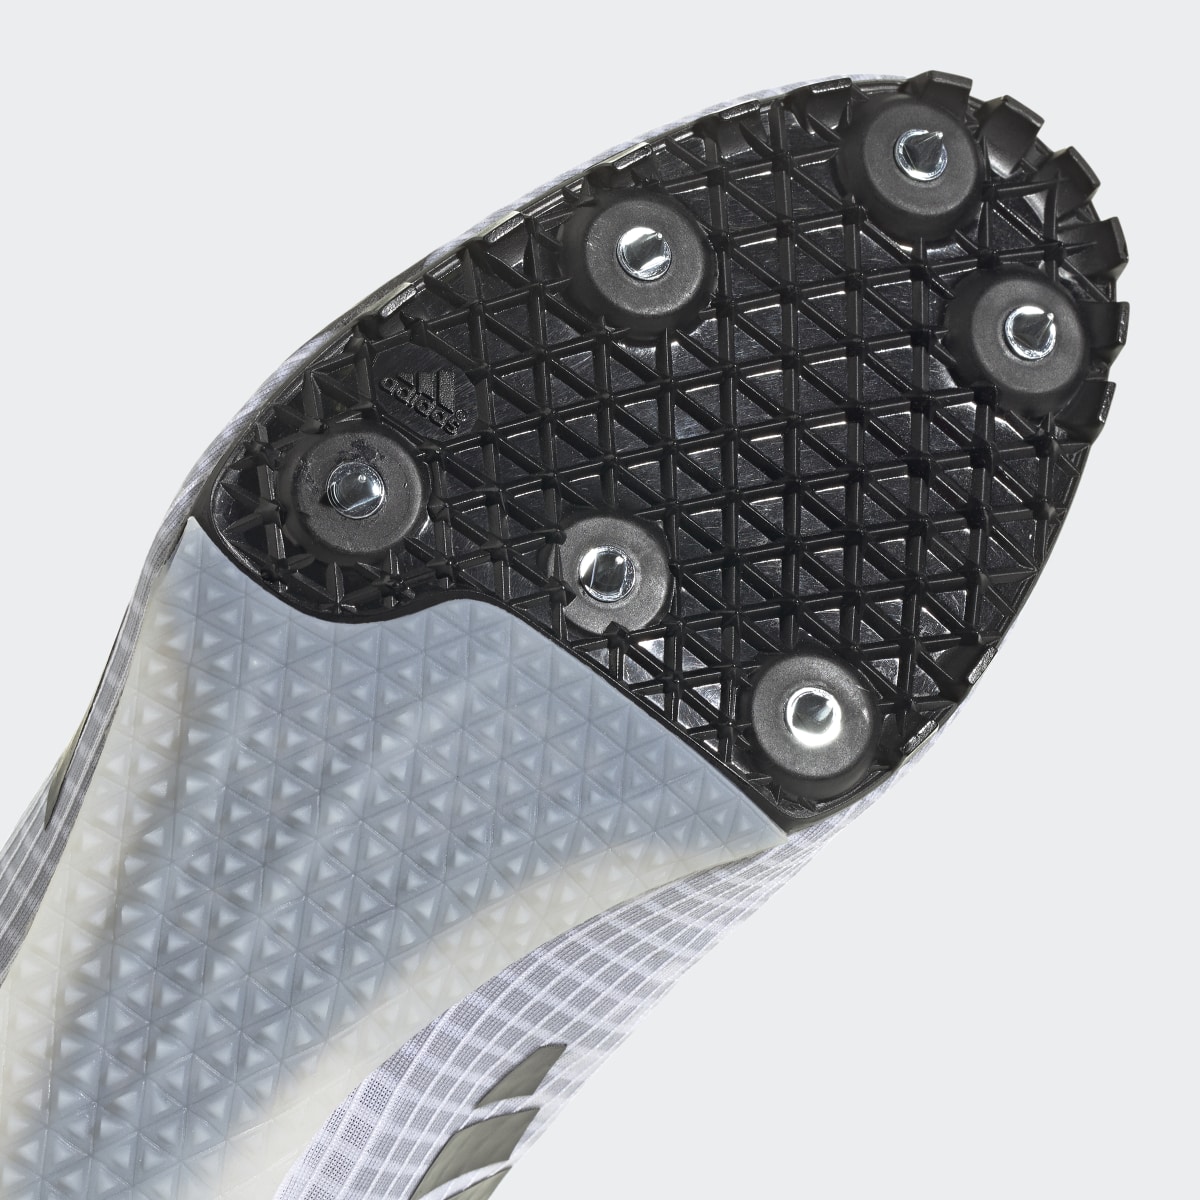 Adidas Sprintstar Spike-Schuh. 10